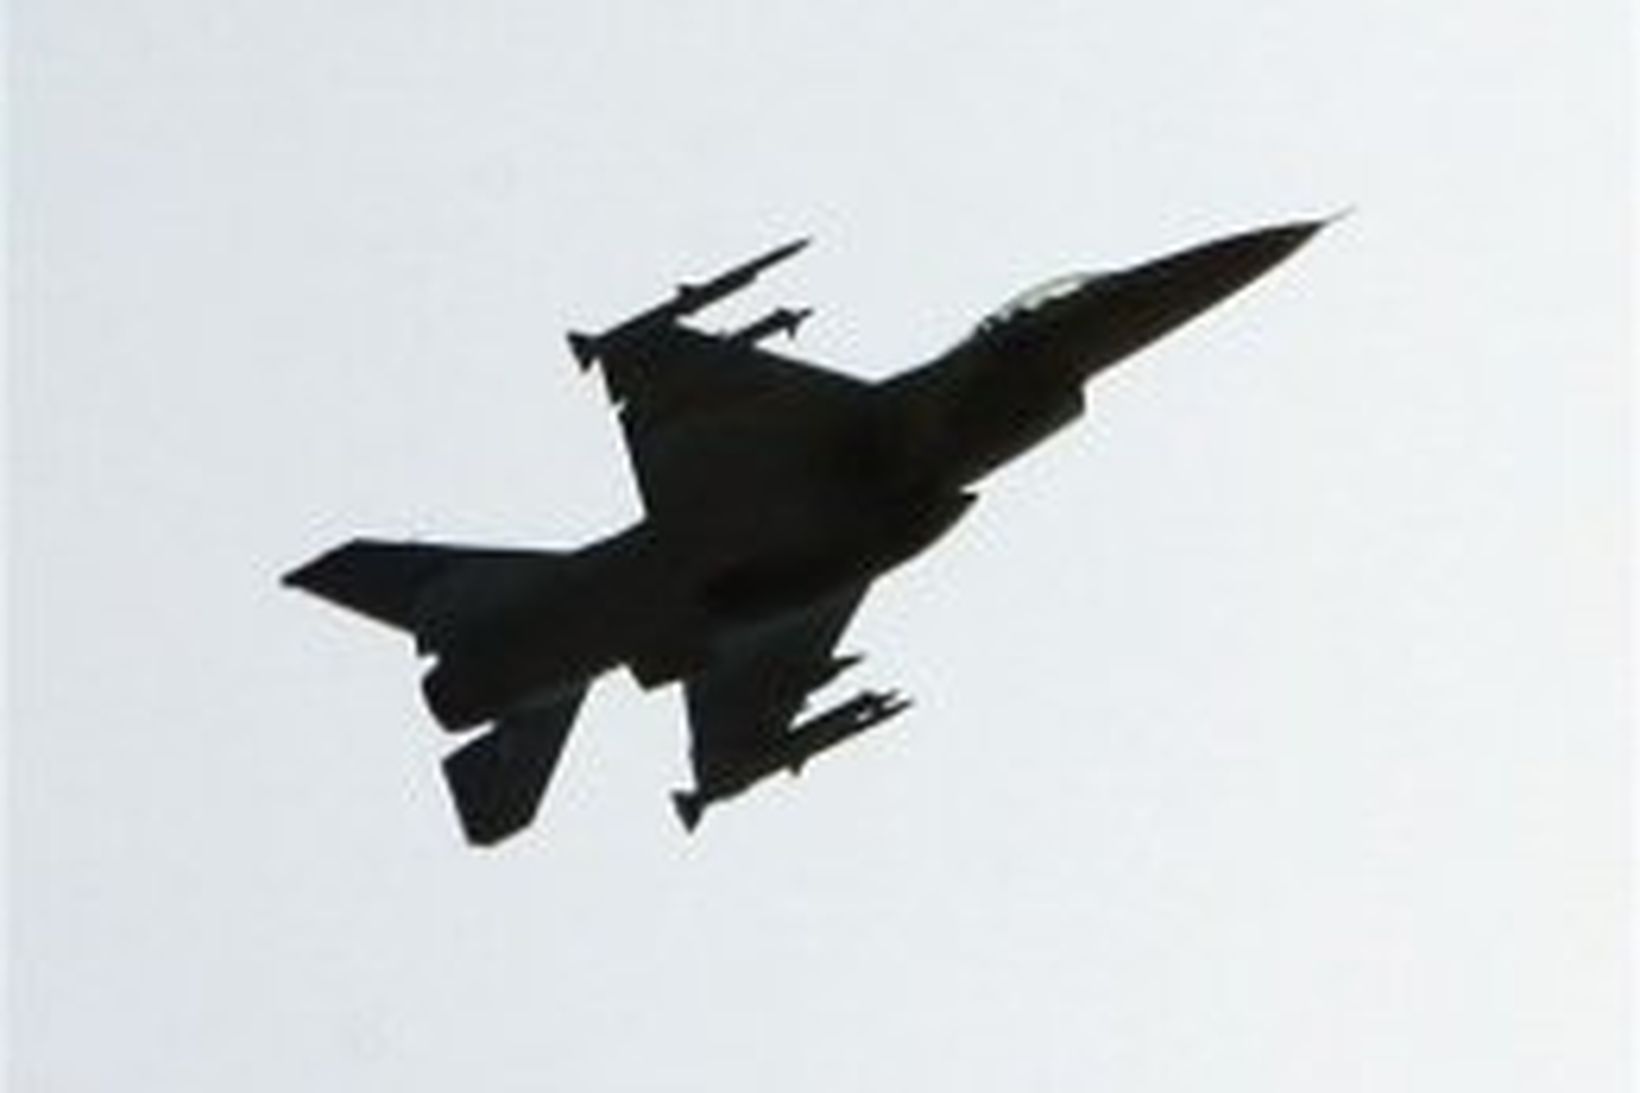 Orrustuflugvél af gerðinni F-16.